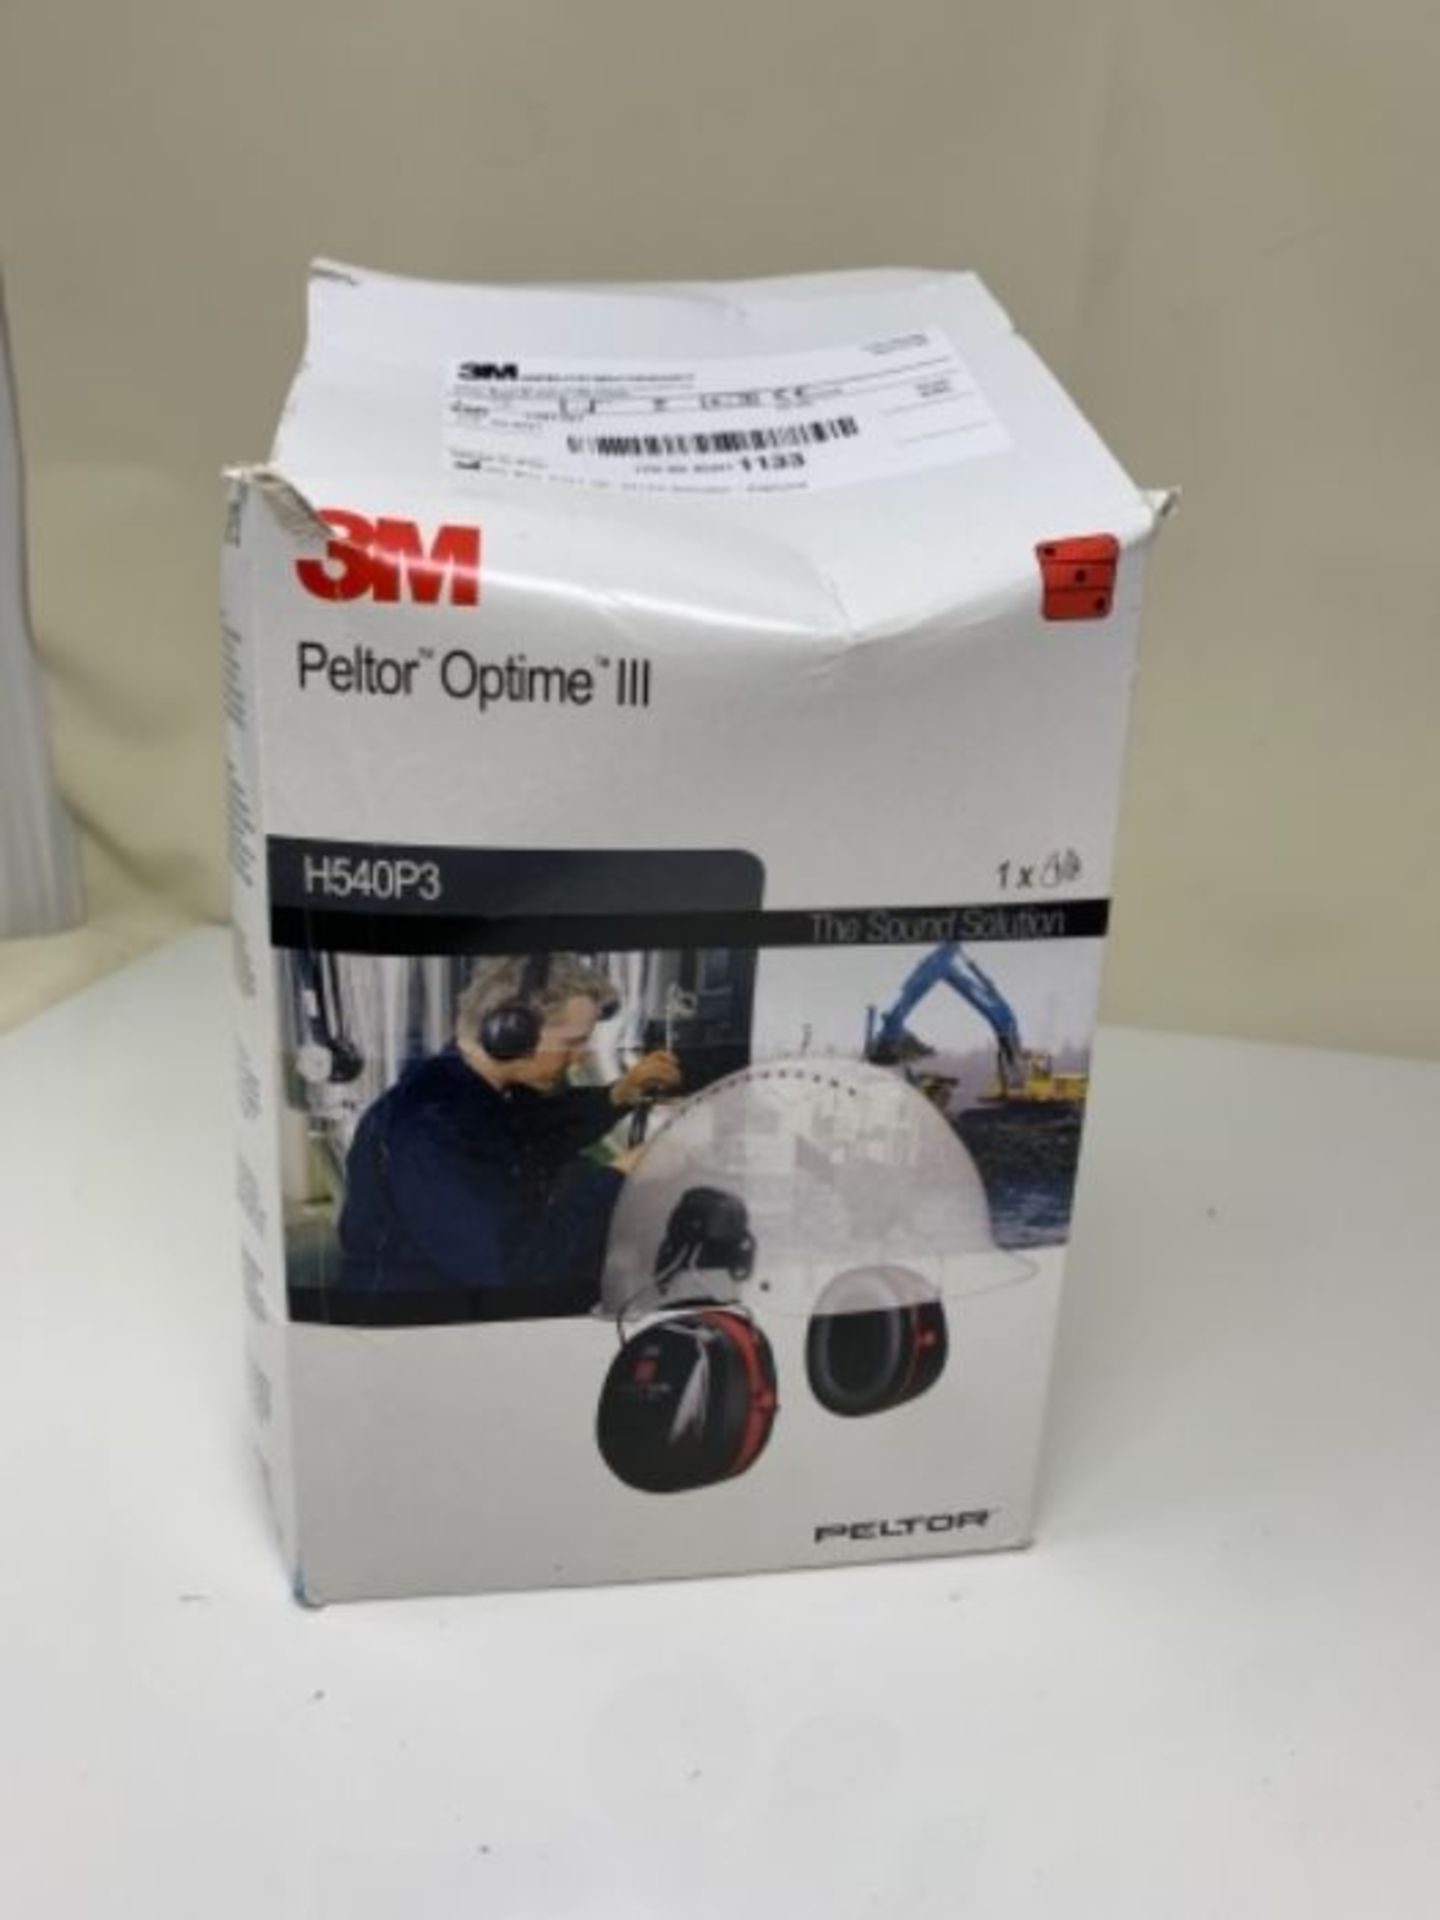 3M PELTOR Optime III Earmuffs, 34 dB, Black/Red, Helmet Mounted, H540P3EA-413-SV - Image 2 of 3